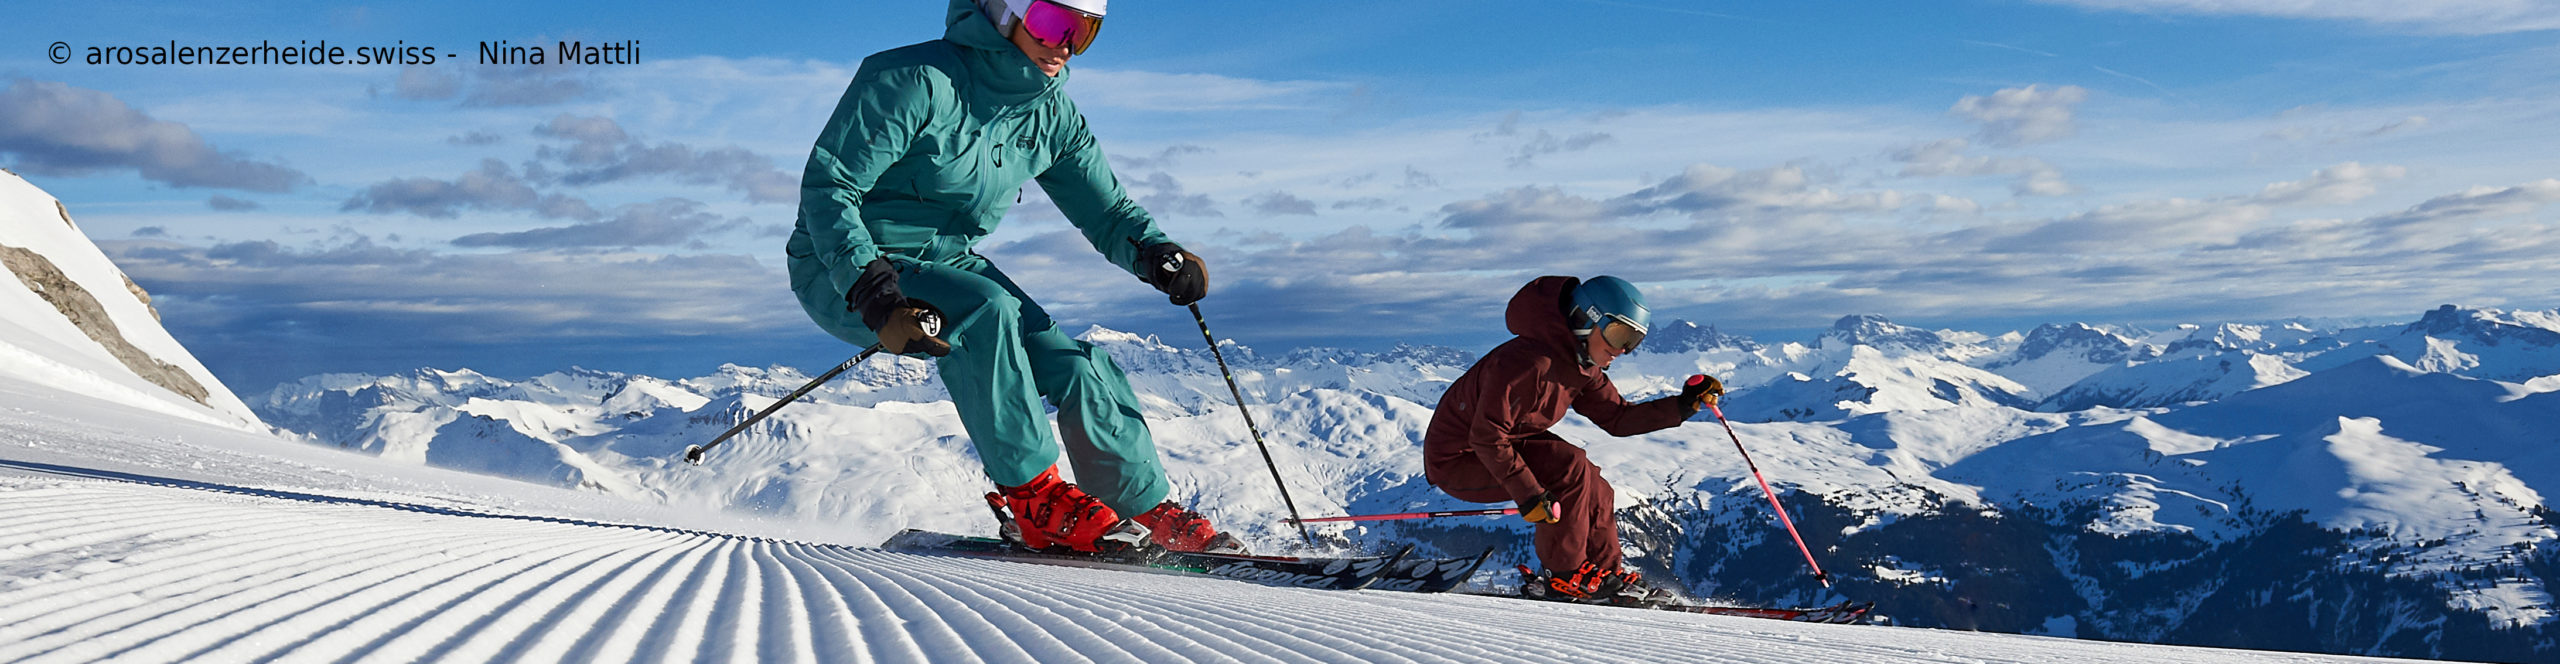 AROSA – LENZERHEIDE – SCHWEIZ – Weltcuport zum Sparpreis über Ostern – 3 Skitage inkl. Skipass – ab Freitag Nachmittag 